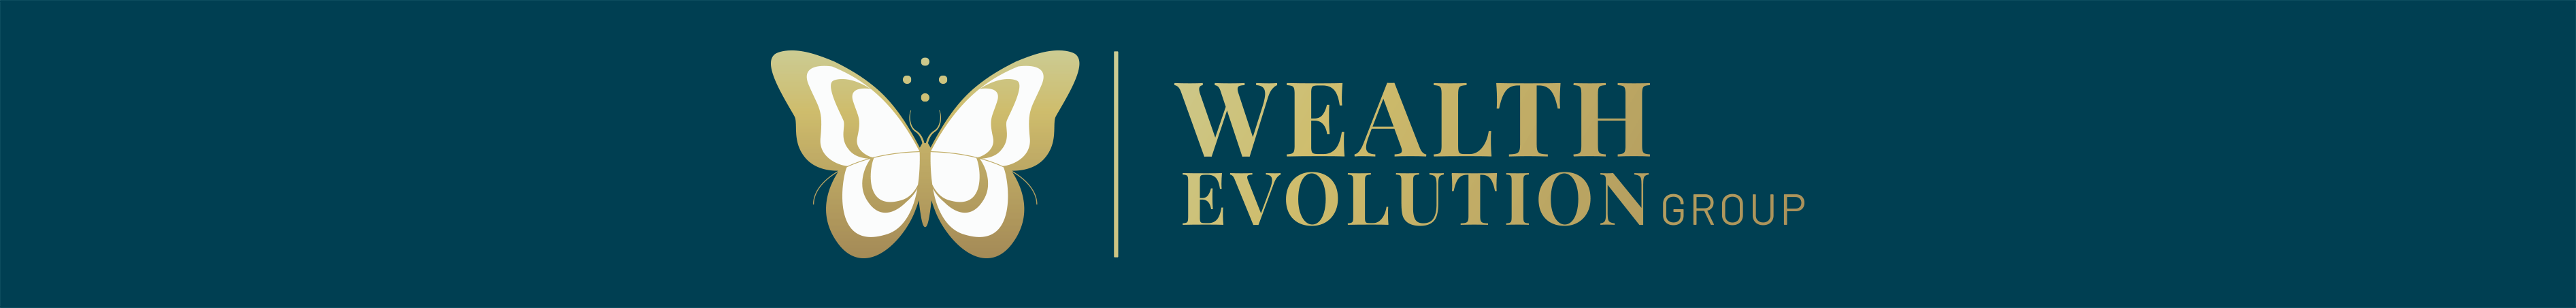 Wealth Evolution Group logo